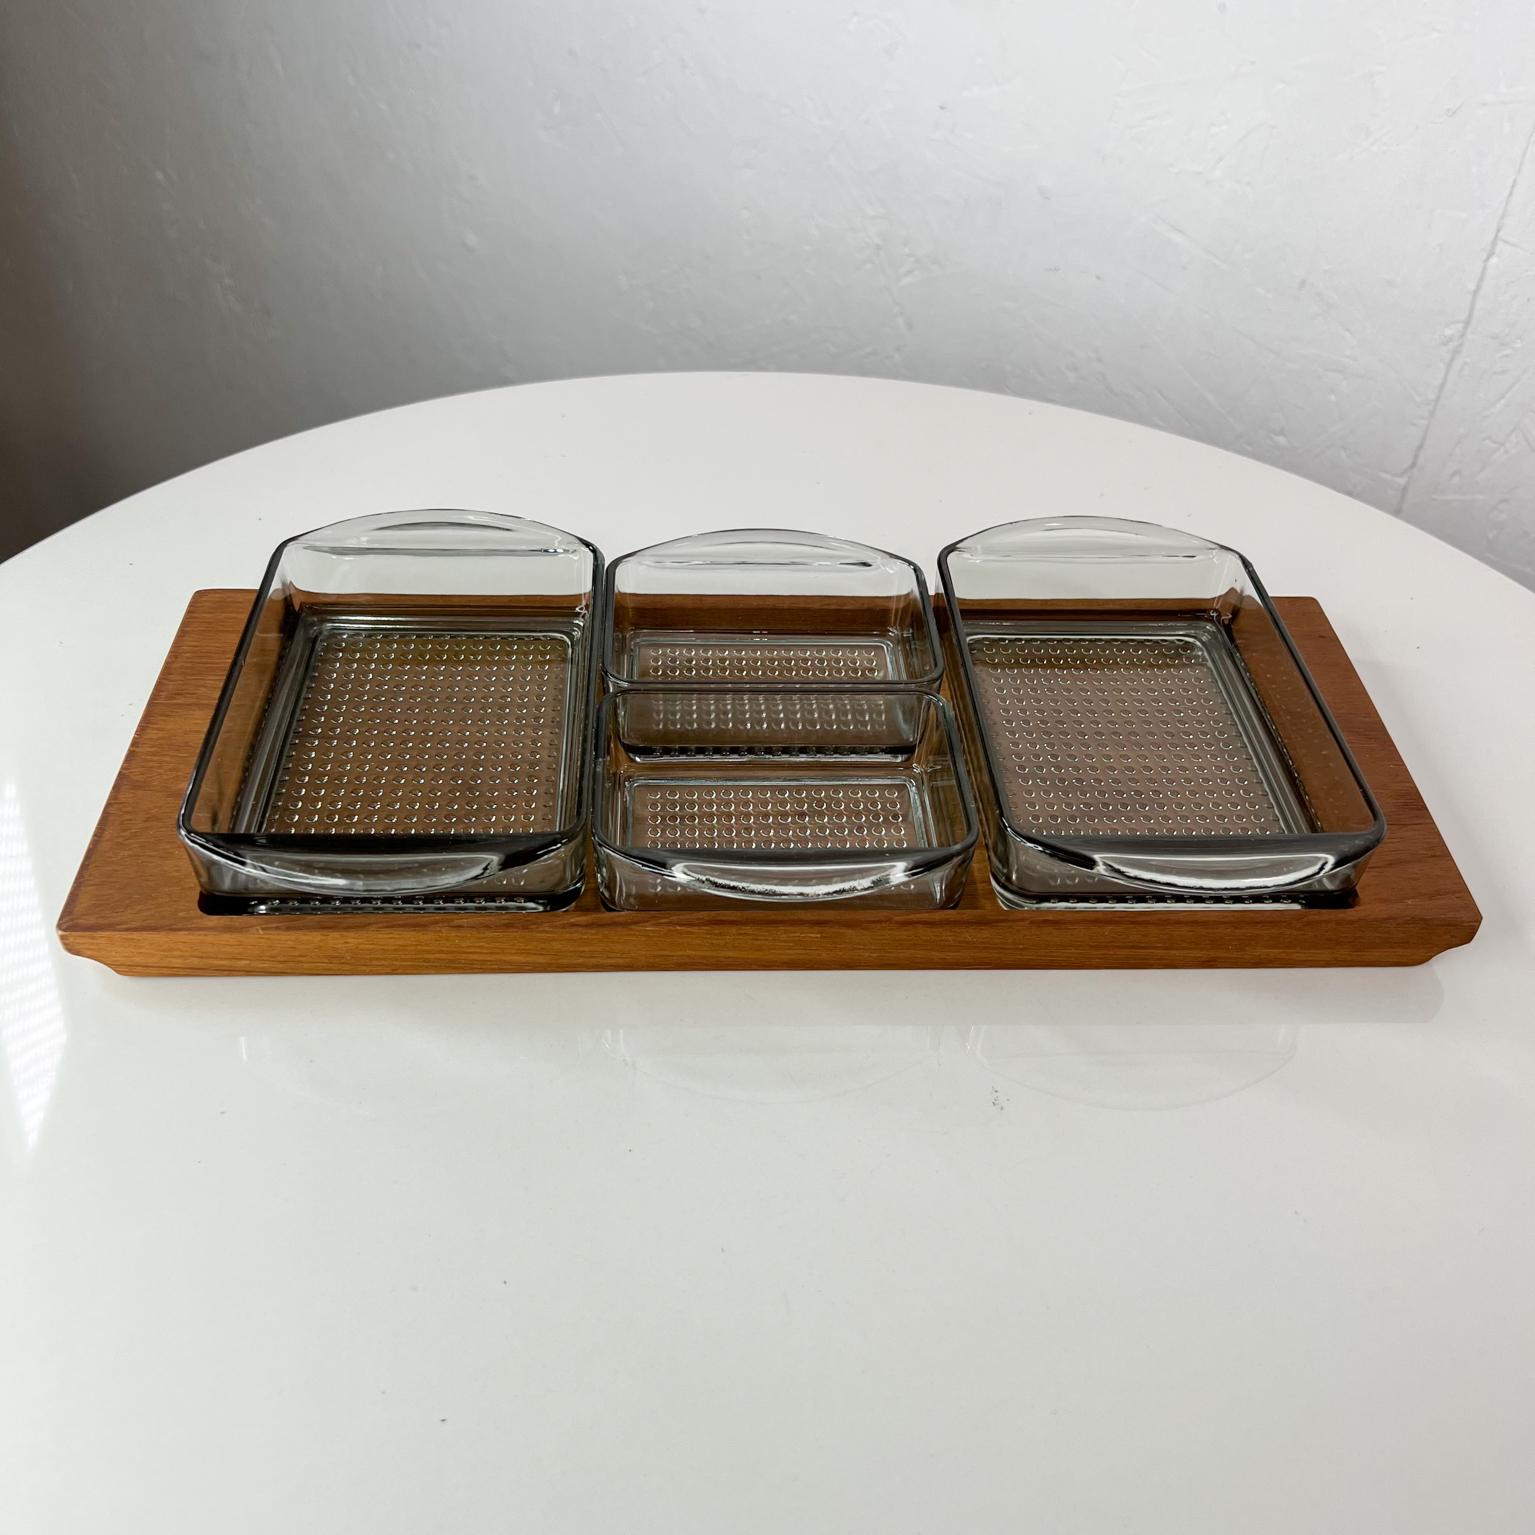 1960er Dänemark serviert Snack-Tablett Set Teak & Glas.
Dänisches modernes Set, hergestellt von Lüthje Wood Denmark 1 Hersteller gestempelt.
Maße: 6,38 breit x 13,75 tief x 1,75 hoch
Originaler, unrestaurierter Zustand.
Siehe Bilder.
 